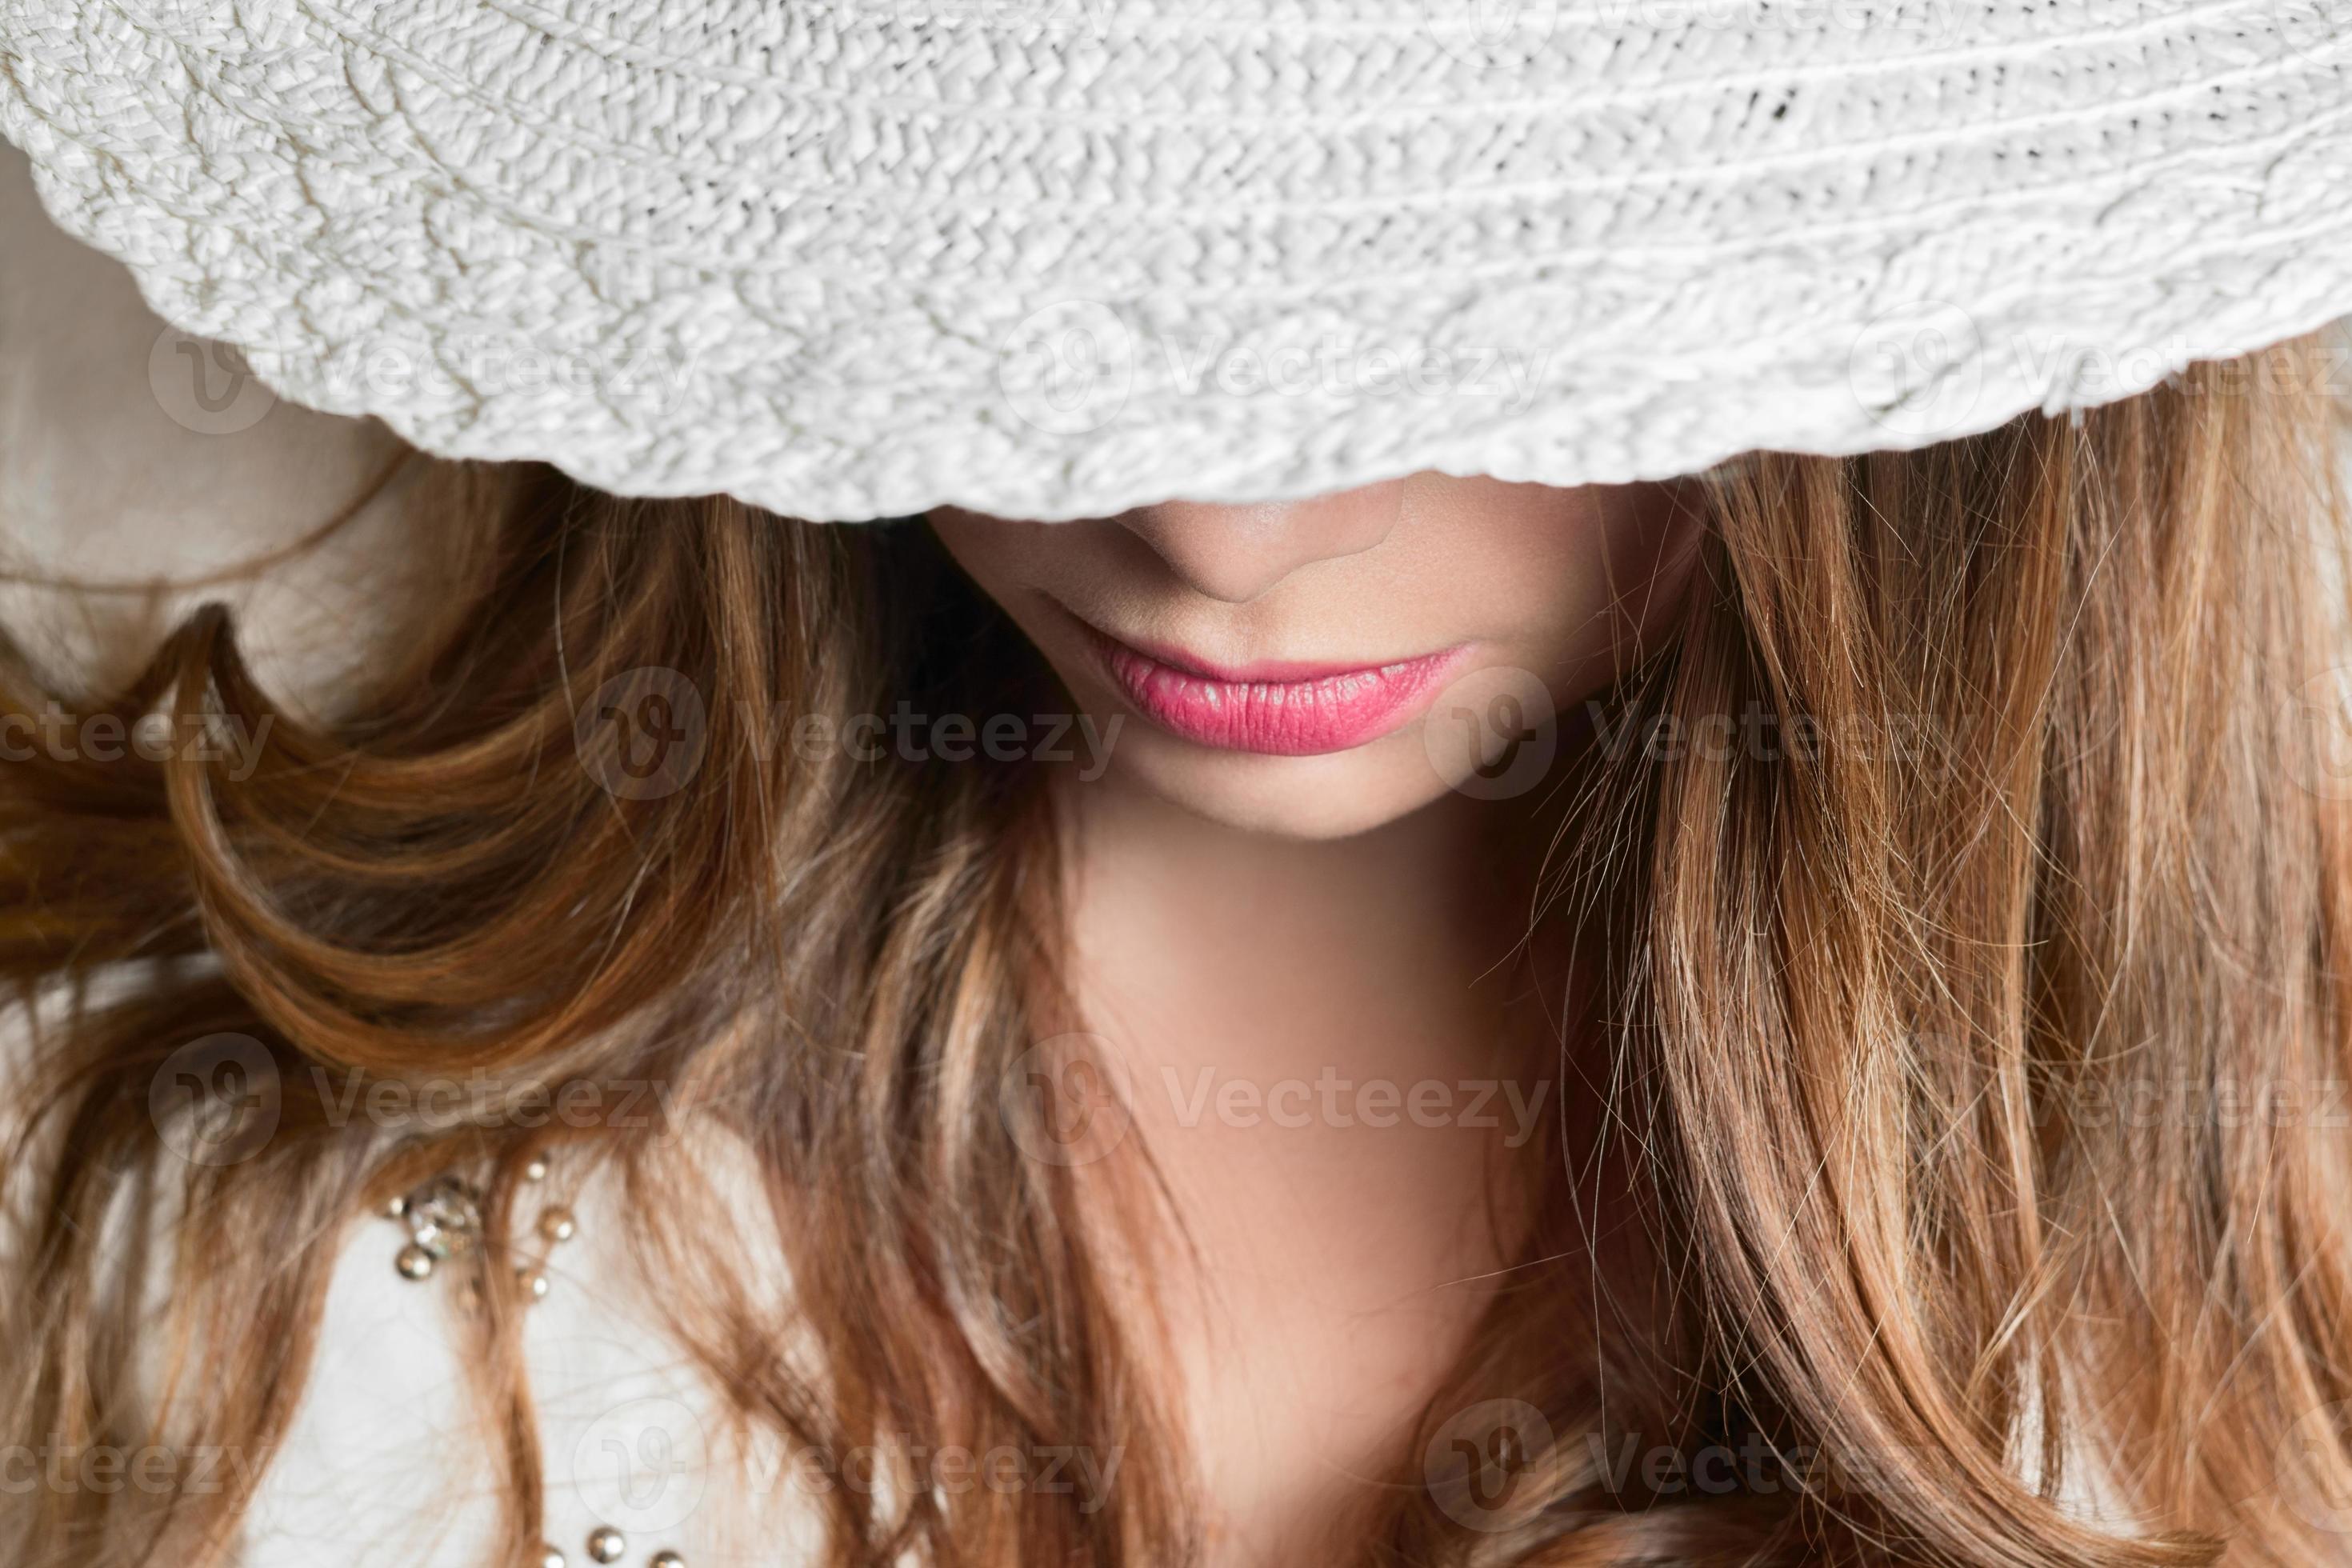 Intrekking Vervloekt middag meisje met hoed 949221 Stockfoto